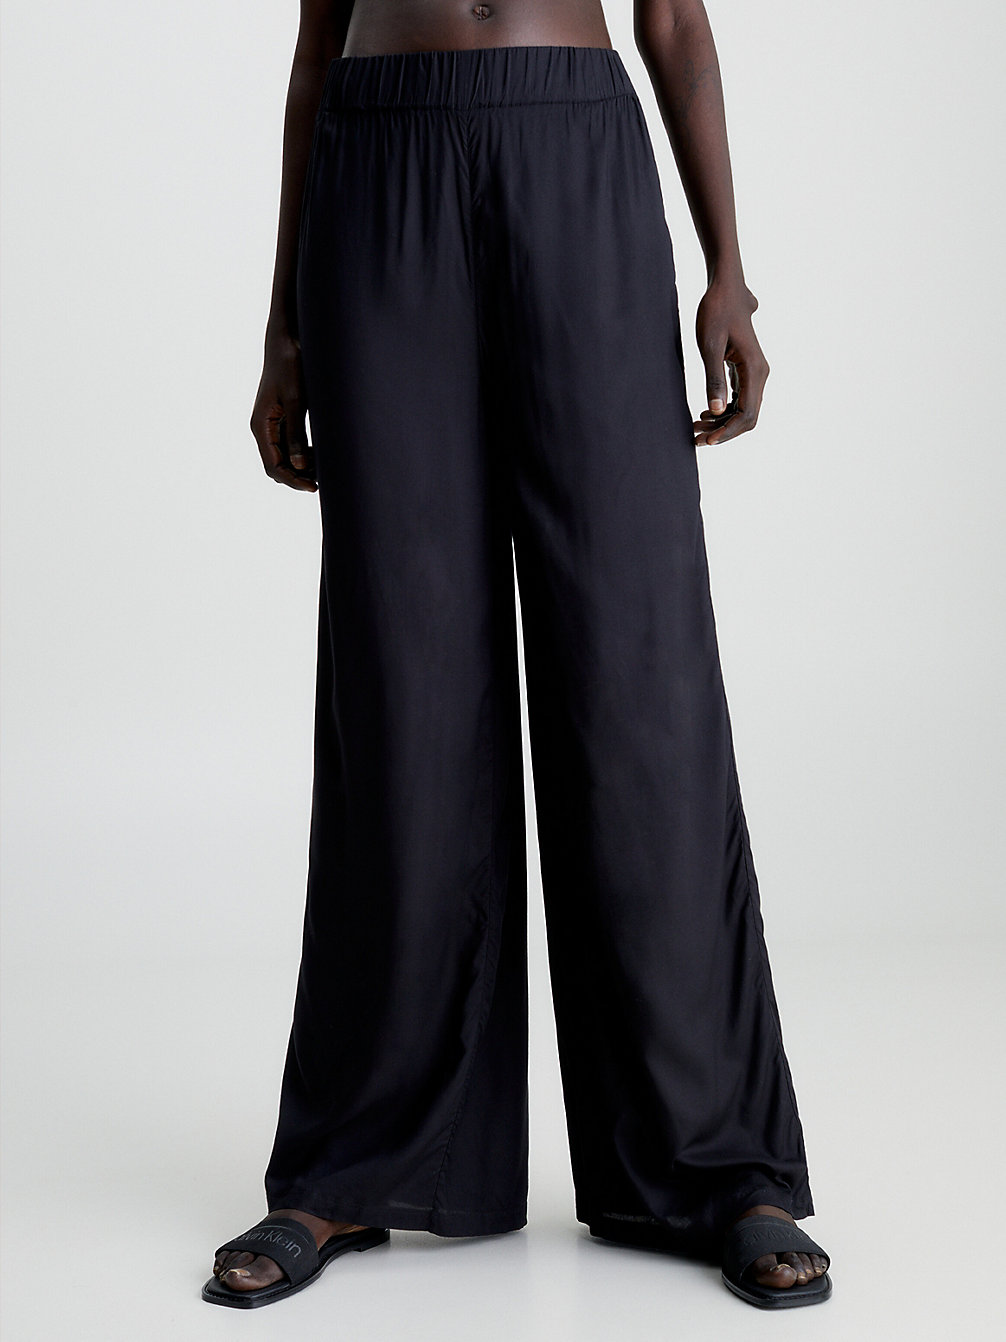 PVH BLACK > Spodnie Plażowe Z Szerokimi Nogawkami > undefined Kobiety - Calvin Klein